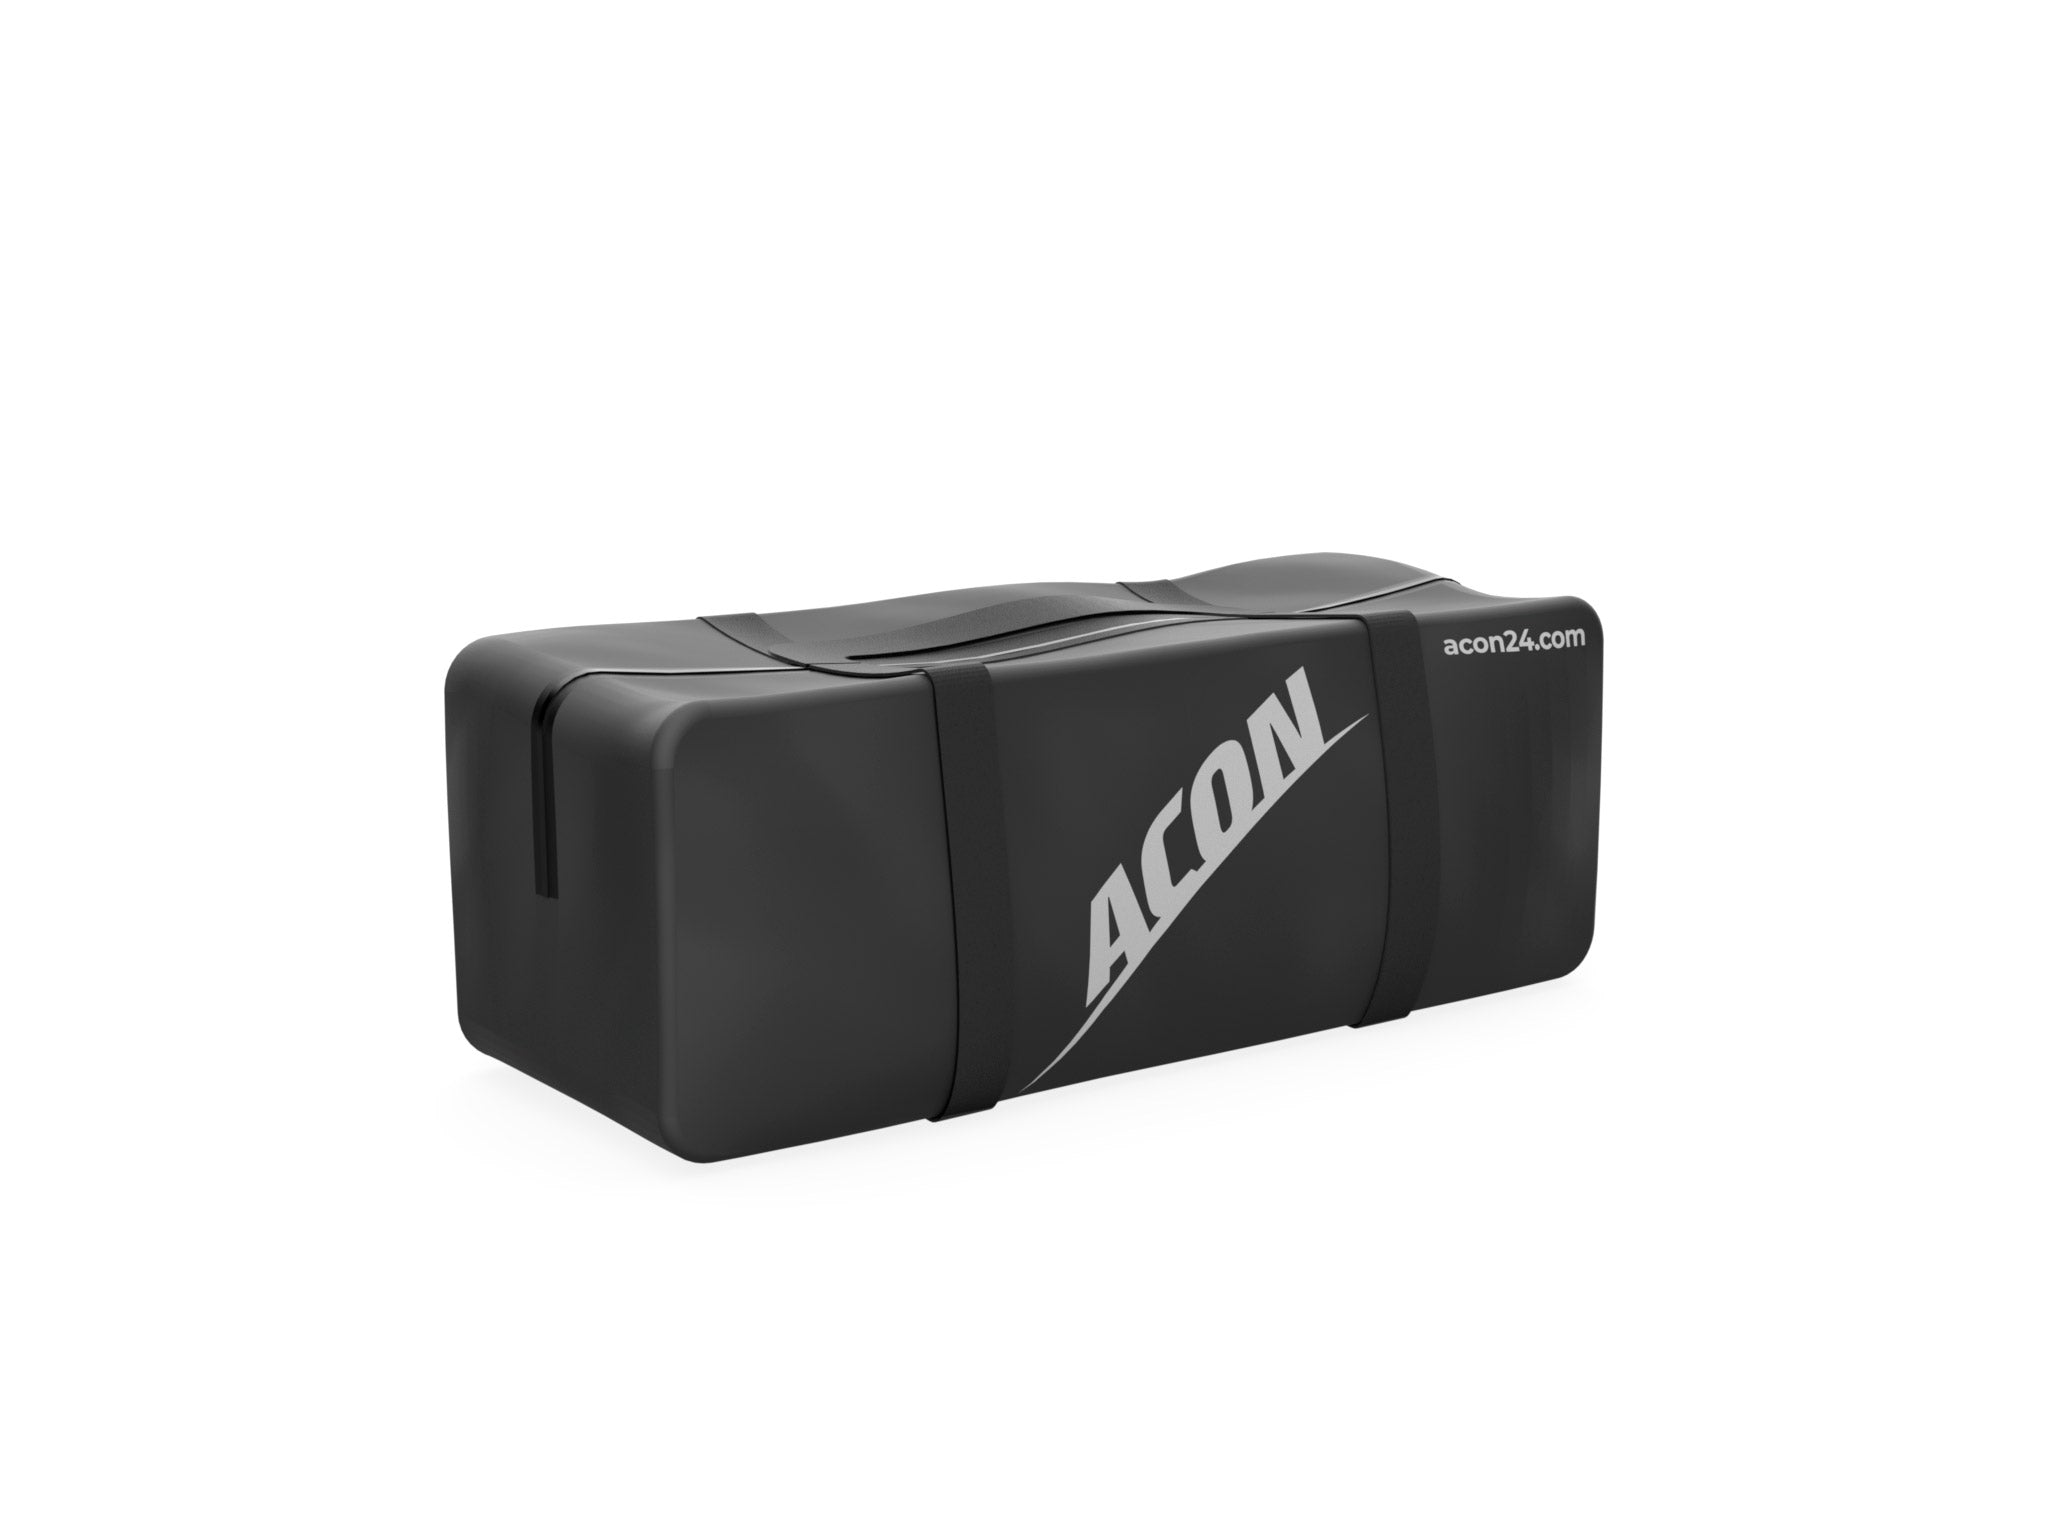 Bärväska för ACON AirBeam 3,0m - acon-se - ingår i paketet